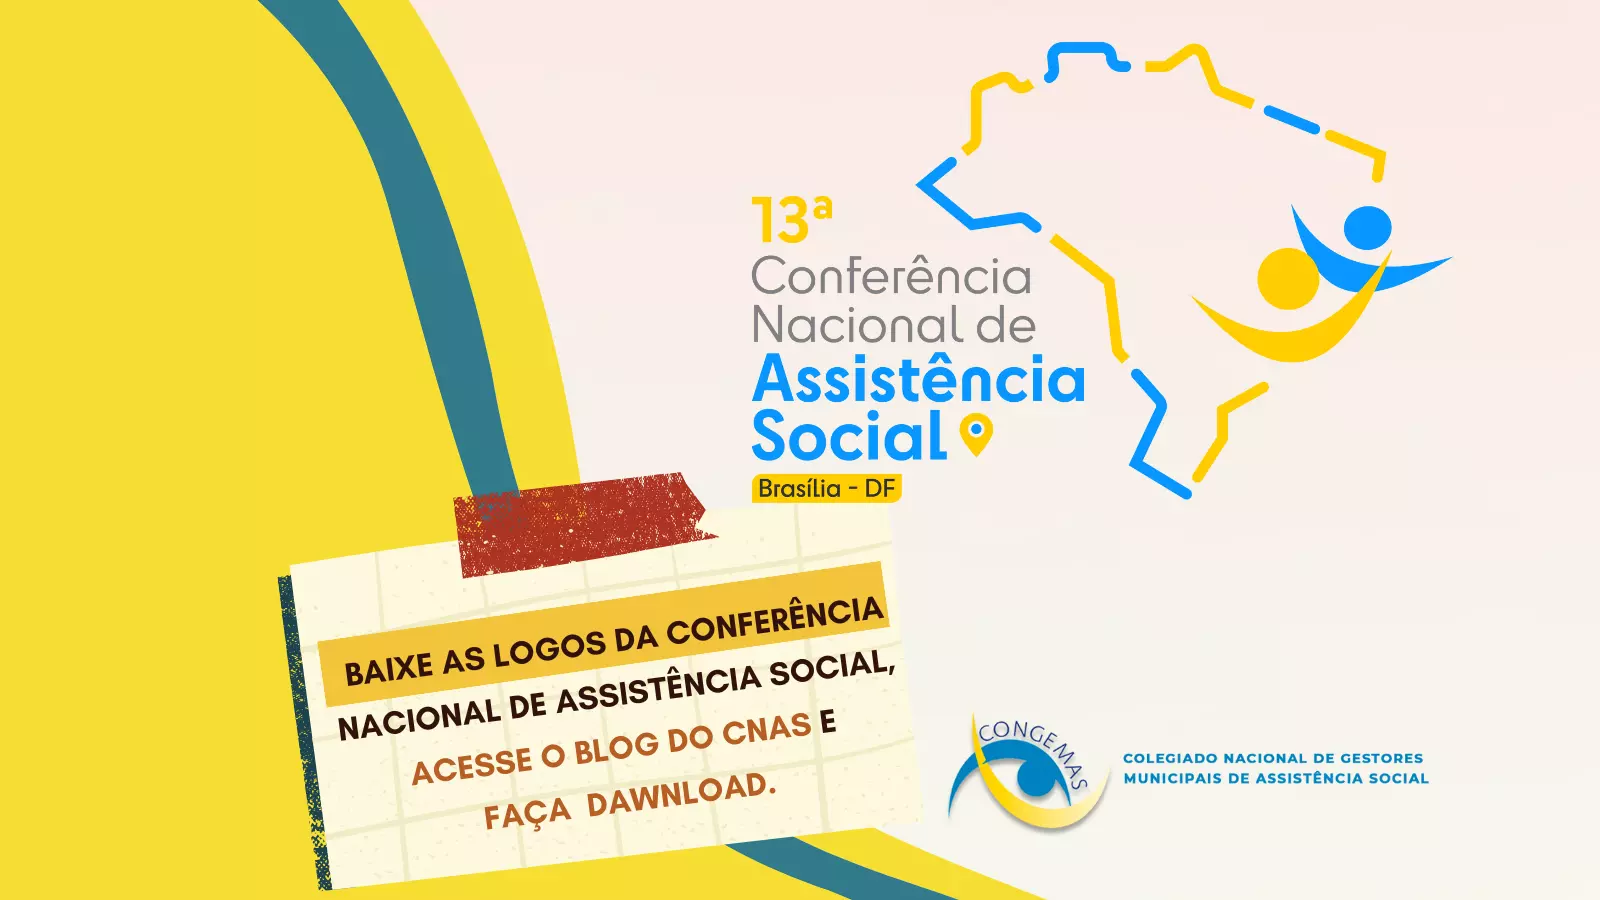 Logos da Conferência Nacional de Assistência Social disponíveis